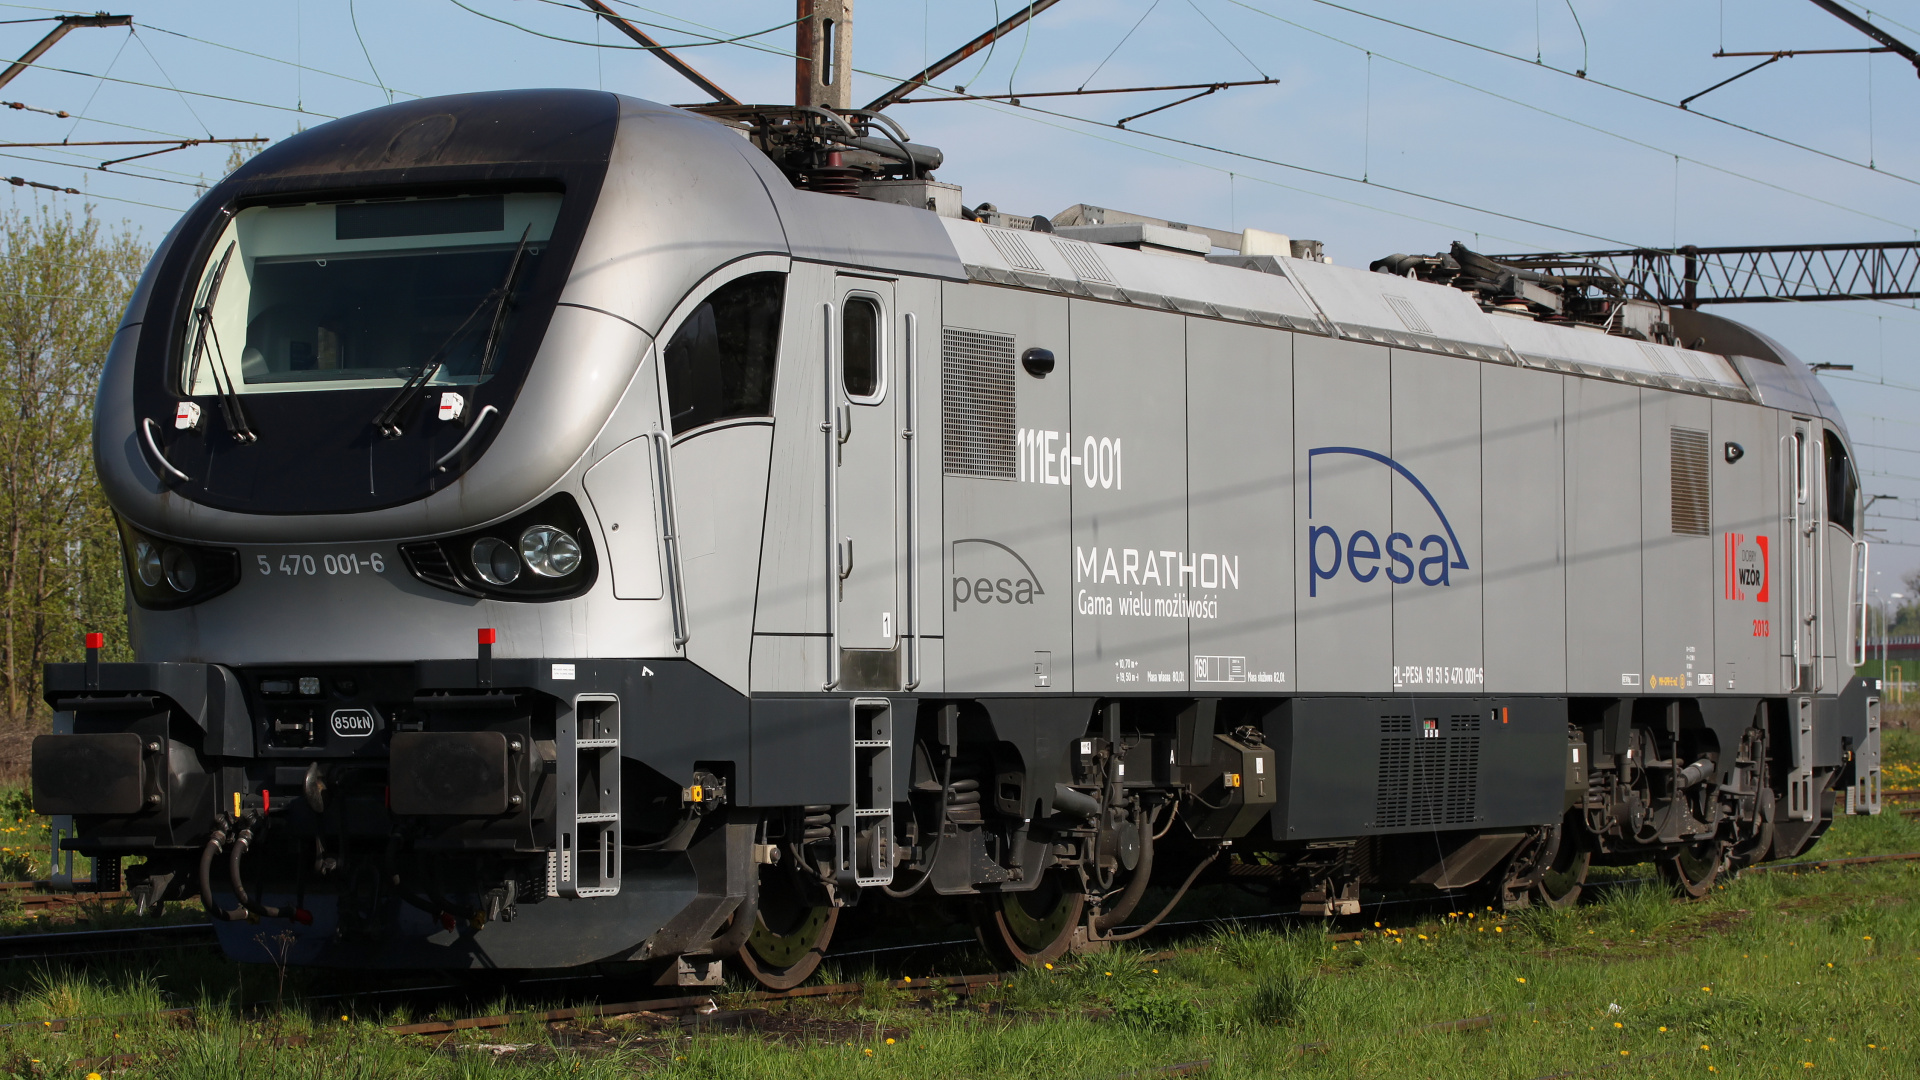 111Ed-001 Marathon (Vehicles » Trains and Locomotives » Pesa Gama)